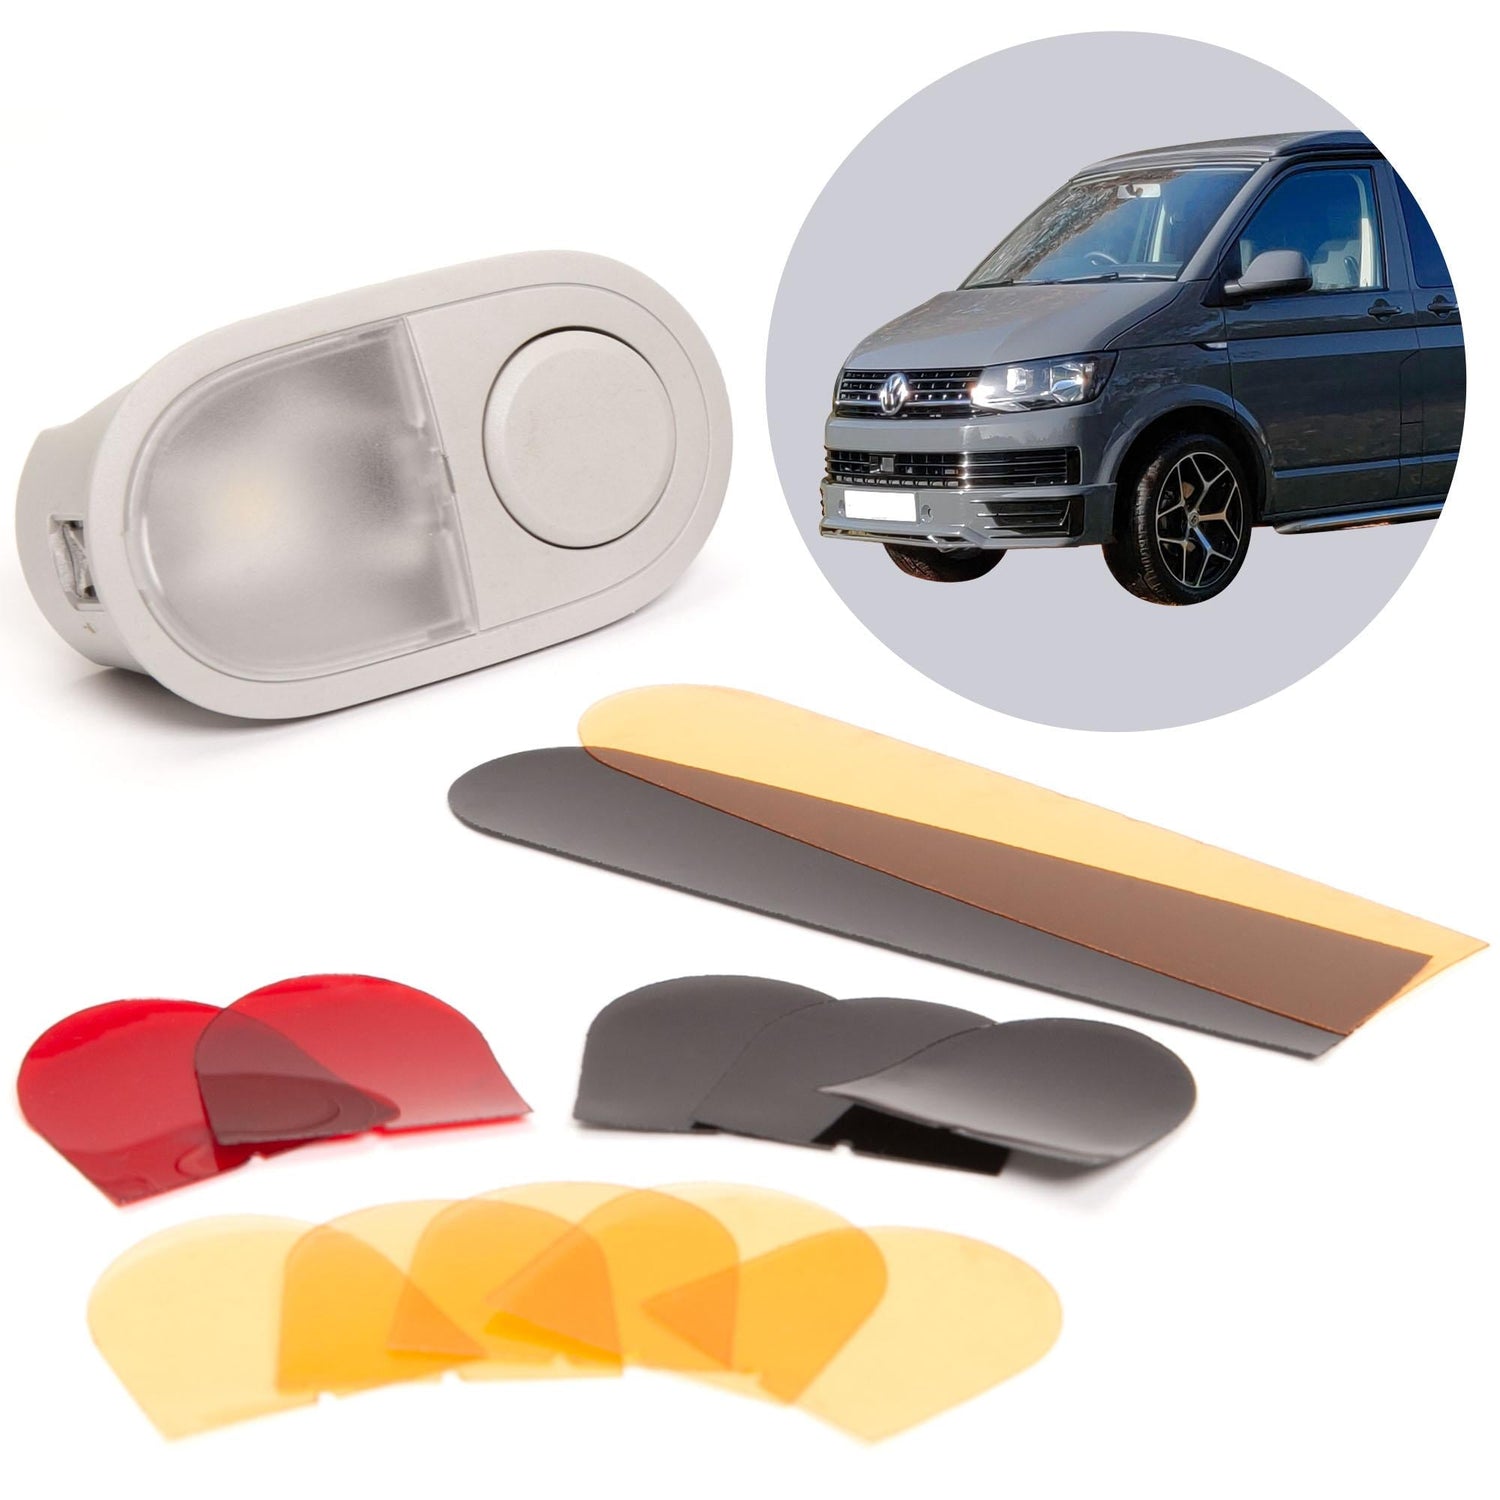 040Parts Farbfilter Set für LED Innenbeleuchtung kompatibel mit VW T6 / T5 / T6.1 auswechselbare Filterfolien für VW Leuchten im Fahrzeuginnenraum - Mixcover - Mixcover